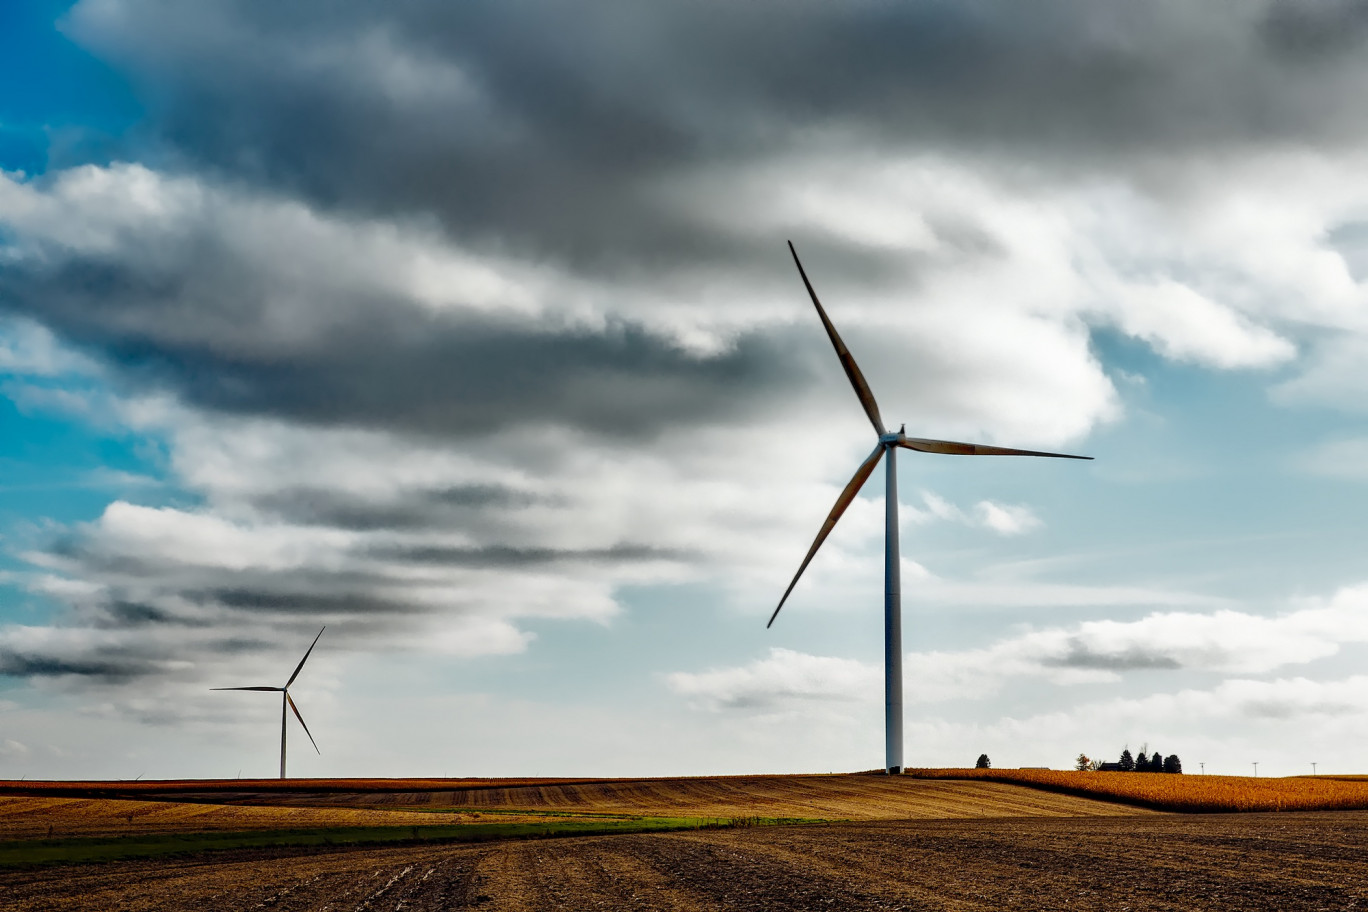 Le projet prévoit cinq éoliennes. Une enquête publique complémentaire a été ouverte en janvier. © Pixabay